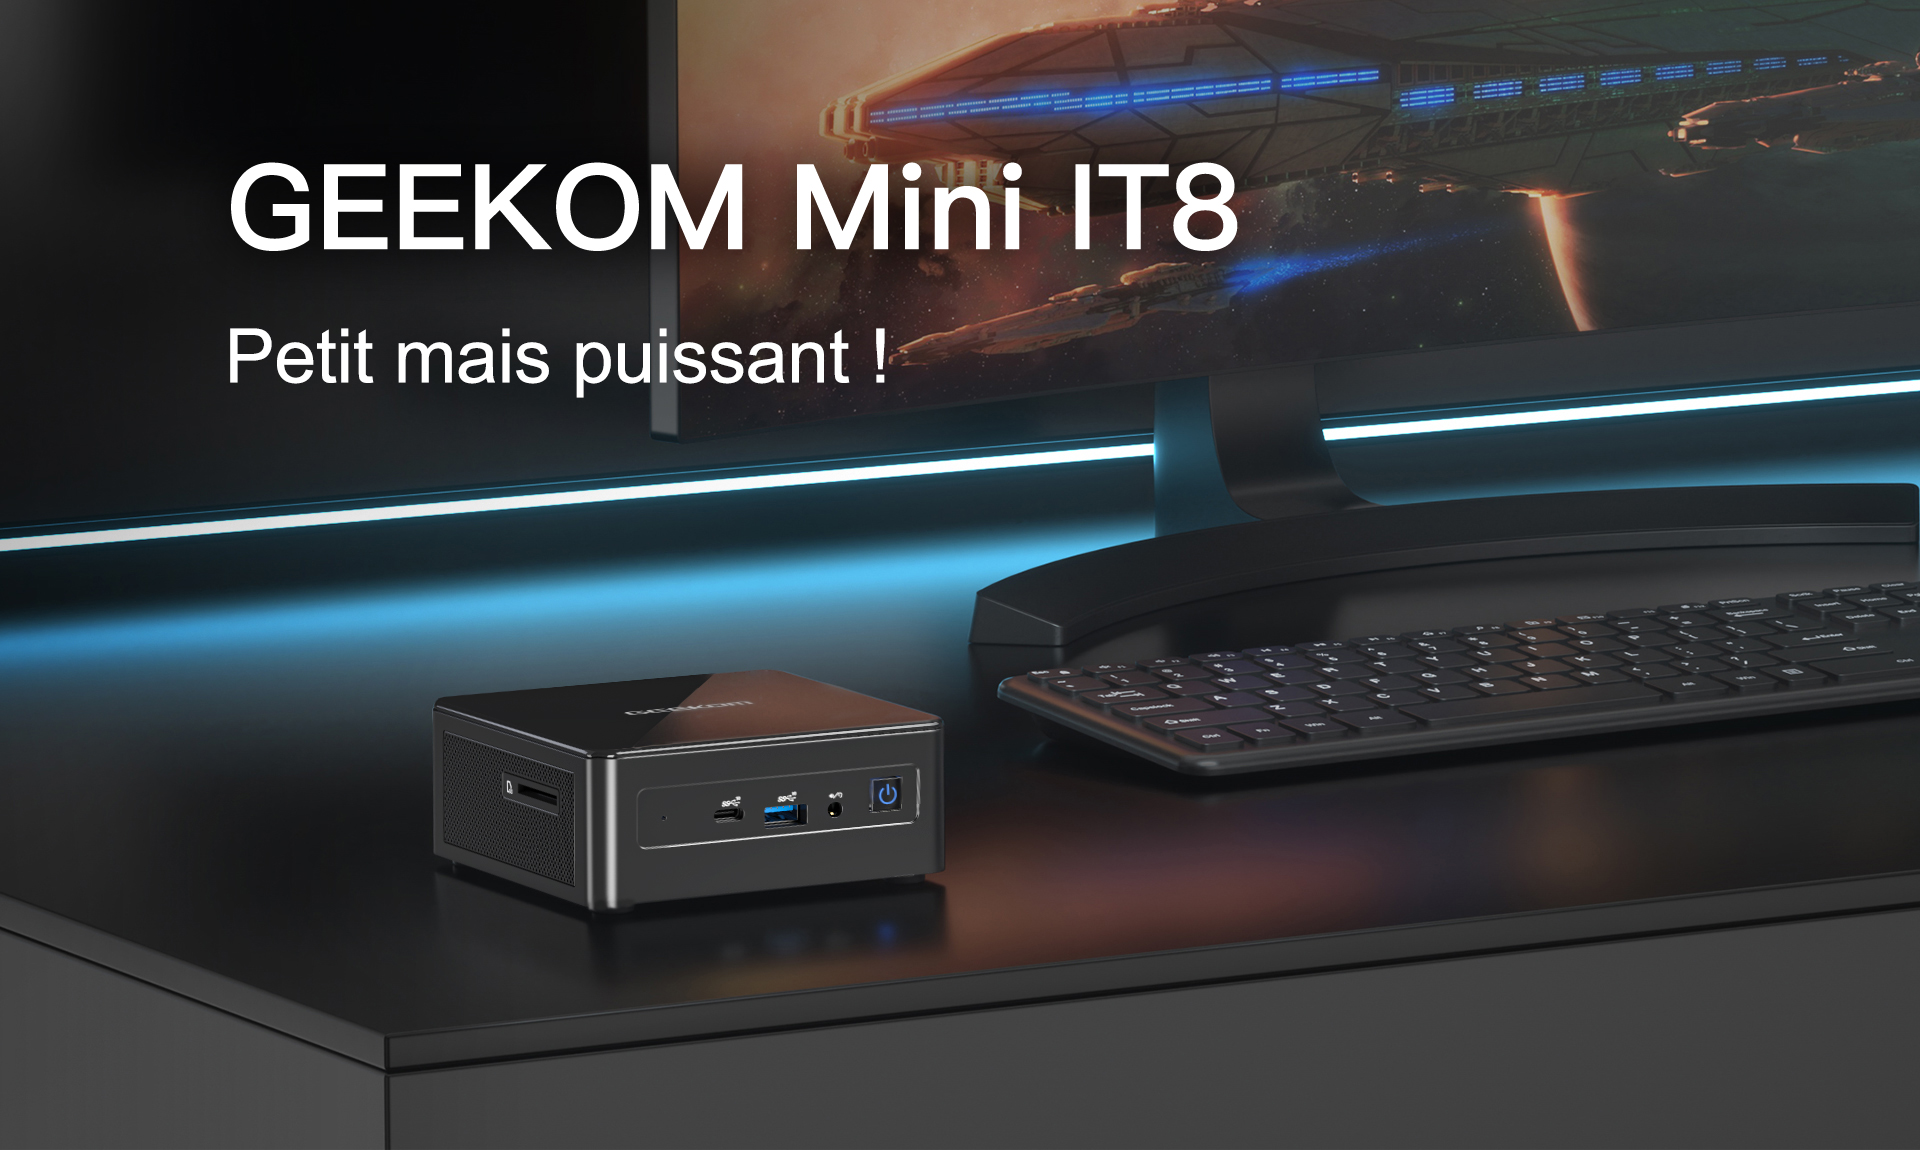 Mini IT8 Peitit mais puissant